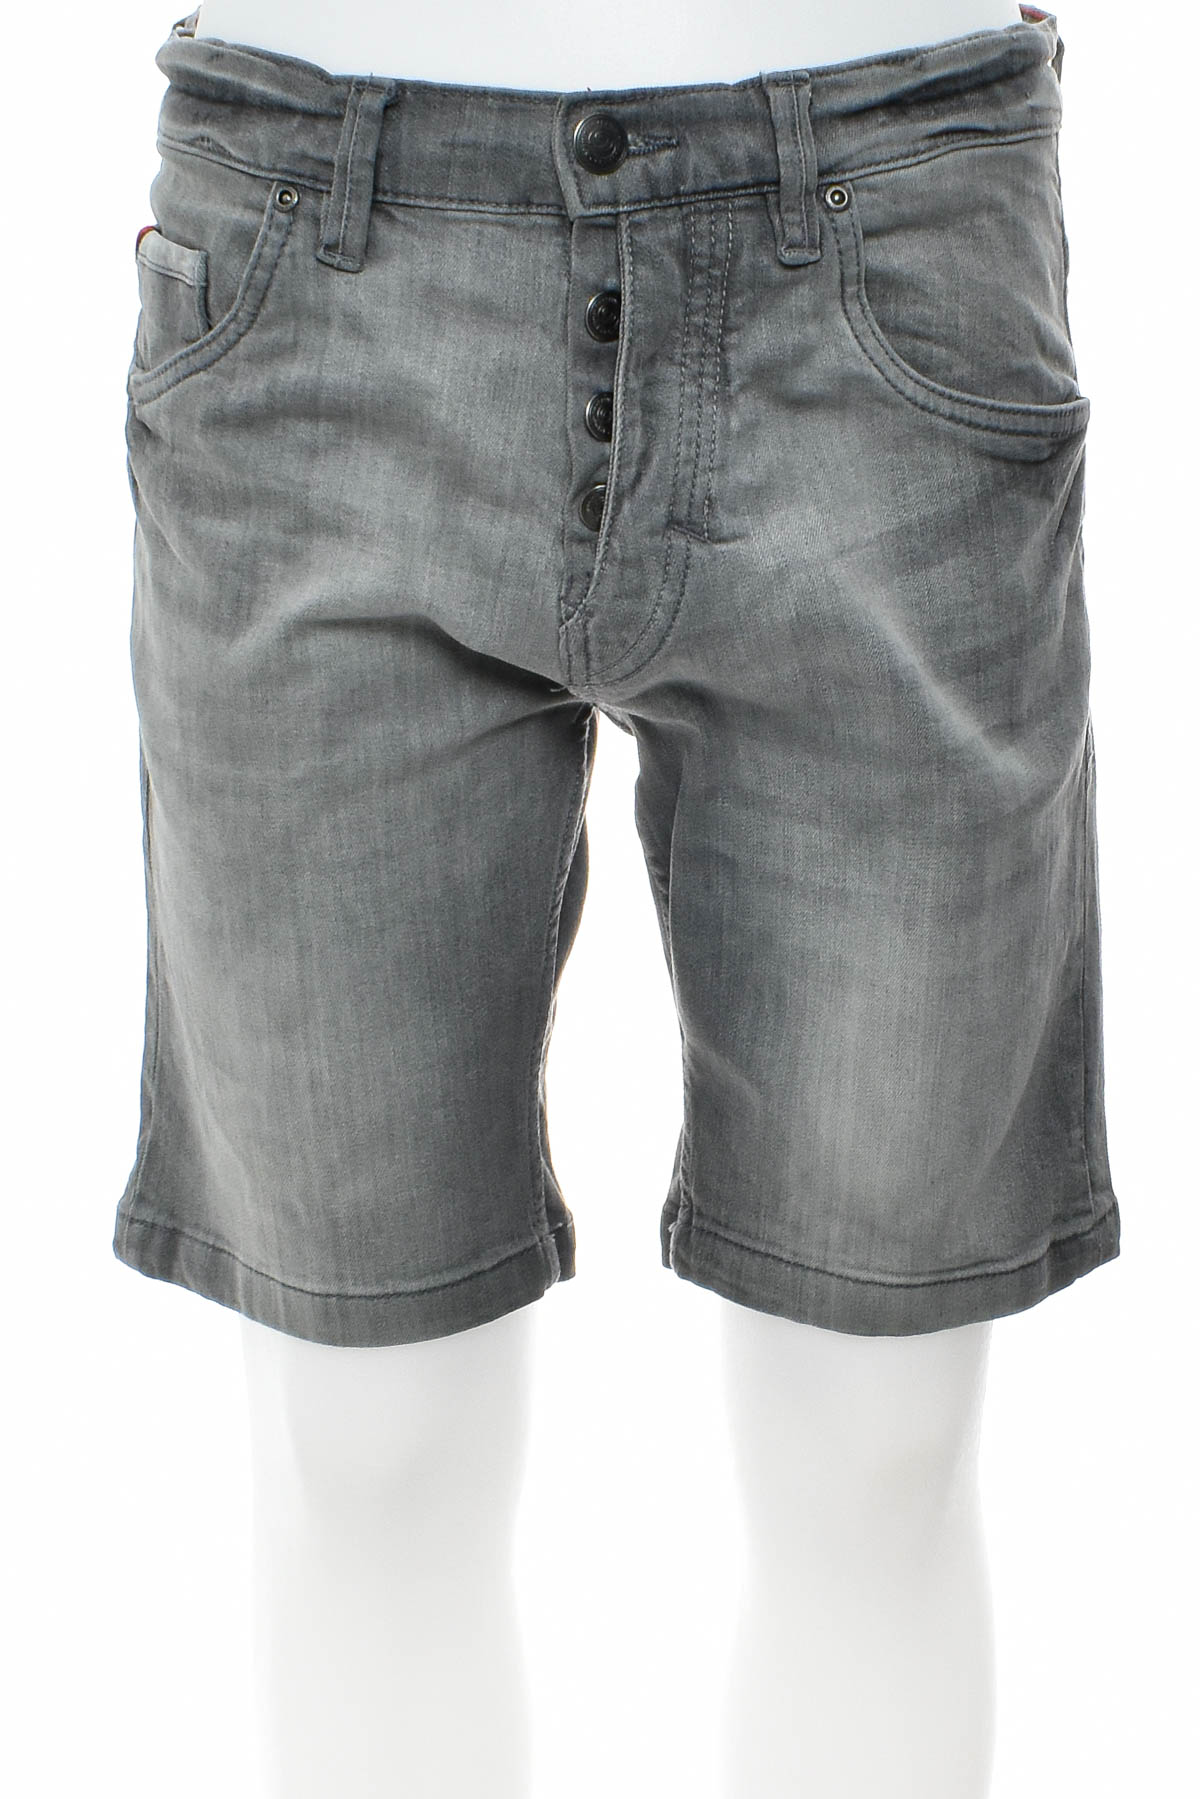 Men's shorts - Watsons - 0